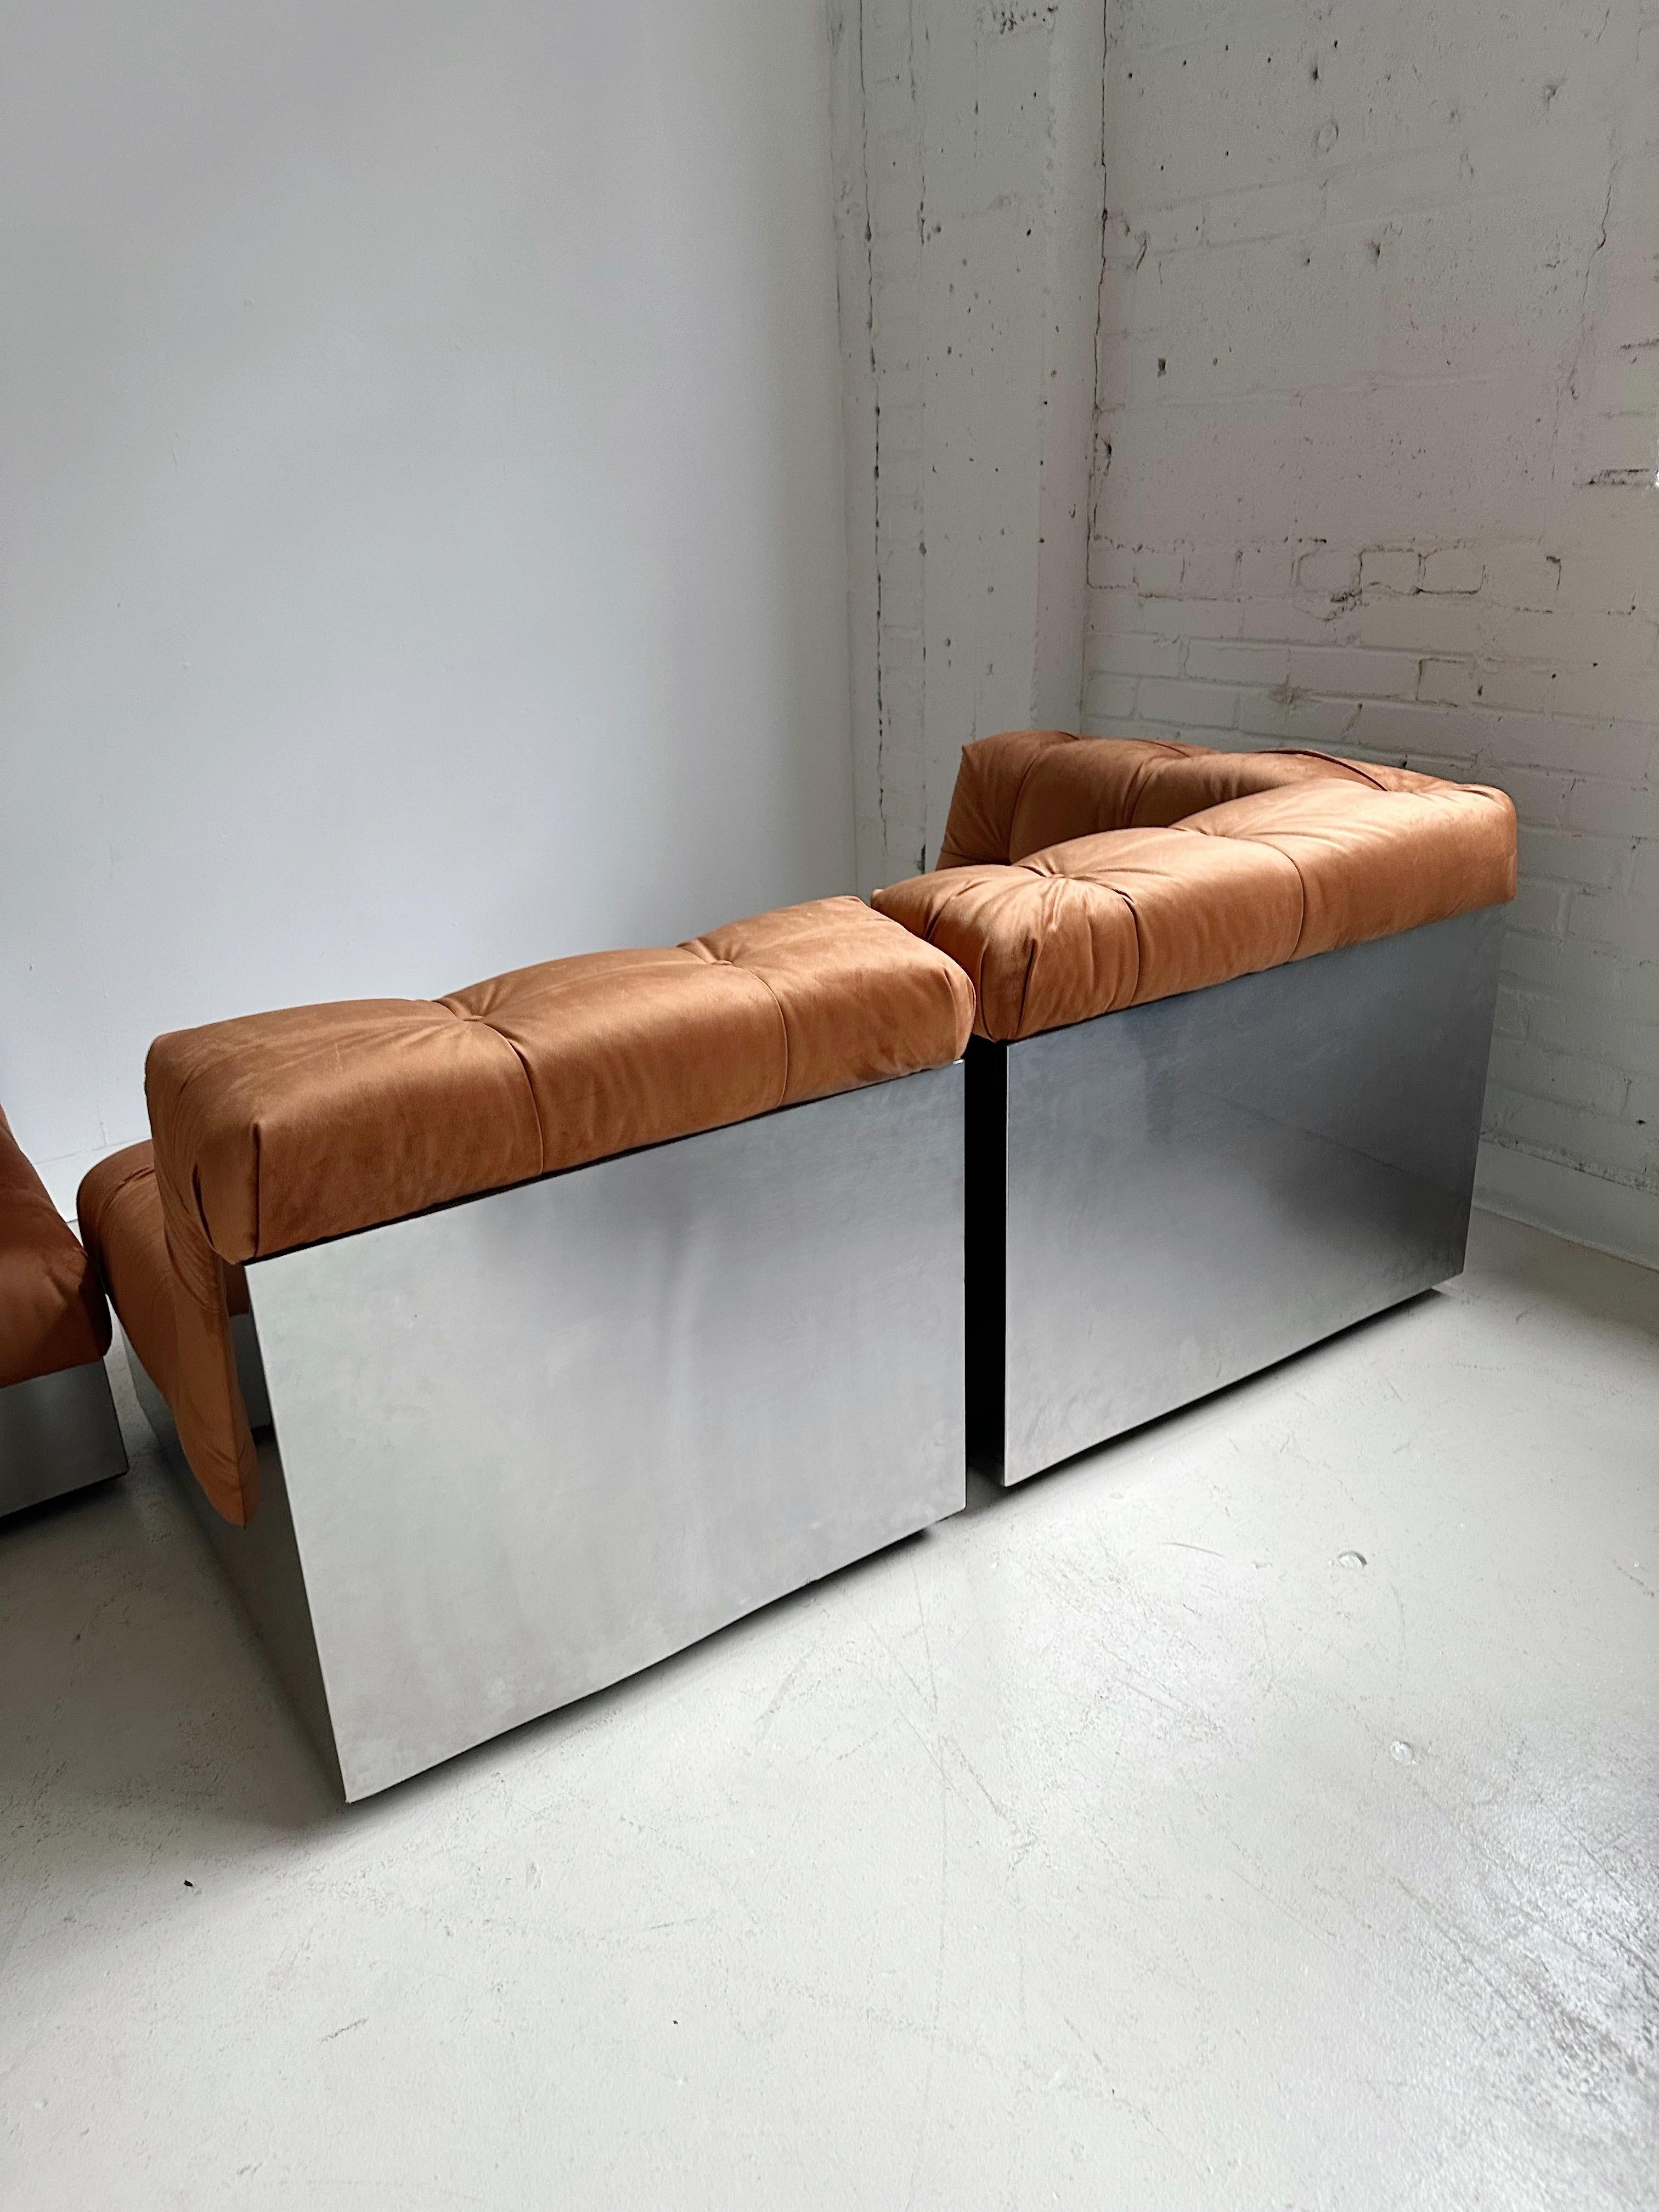 Samt & Stahlgestell 4 Pieces Modulares Sofa att. to Canasta by Giorgio Montani 4